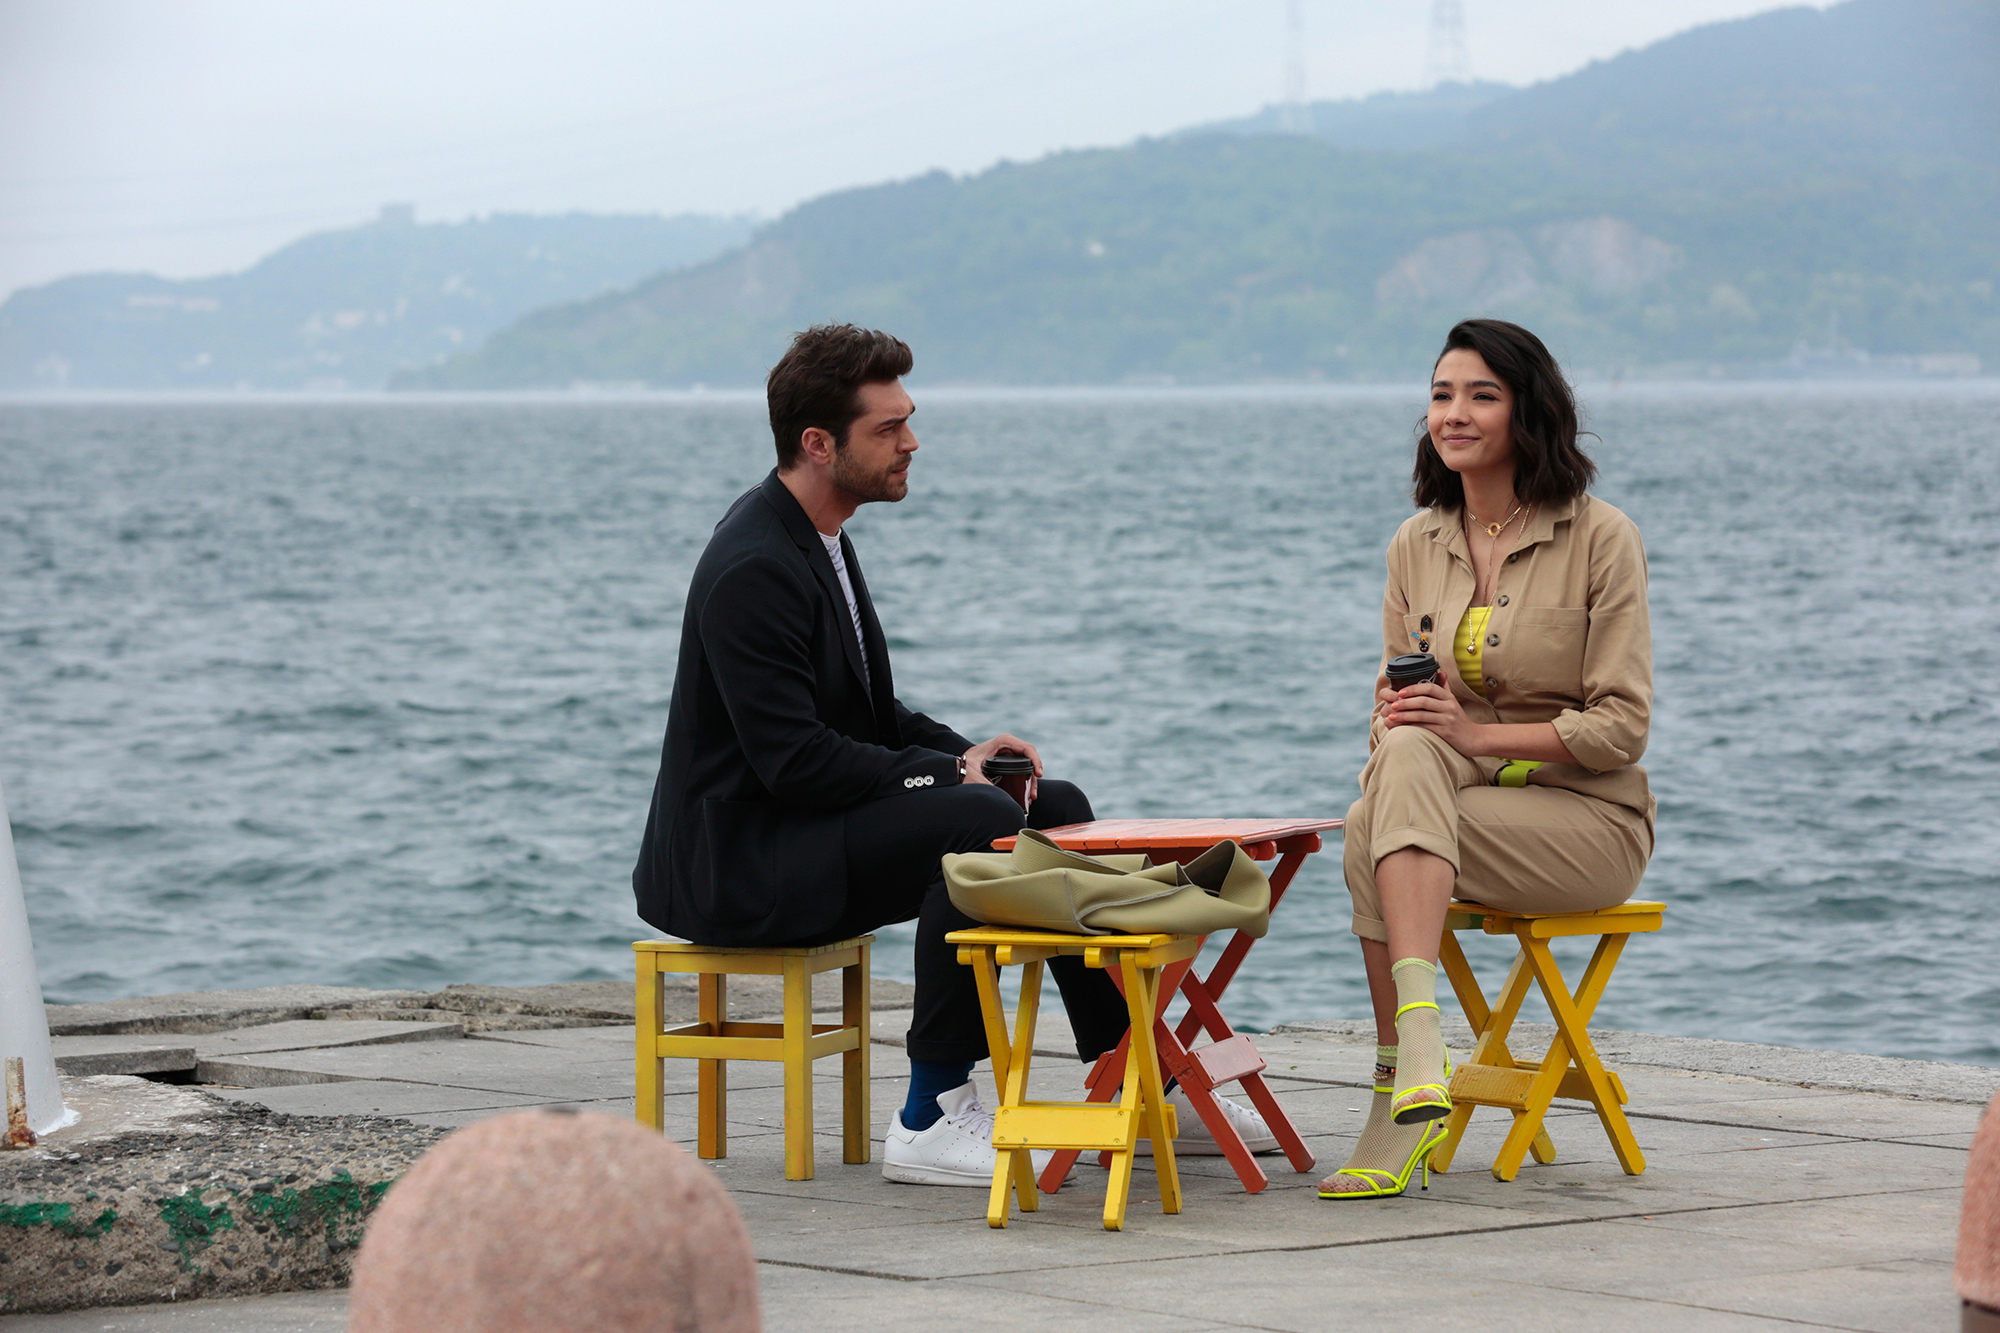 Everywhere I Go (Her Yerde Sen) Tv Series - Turkish Drama